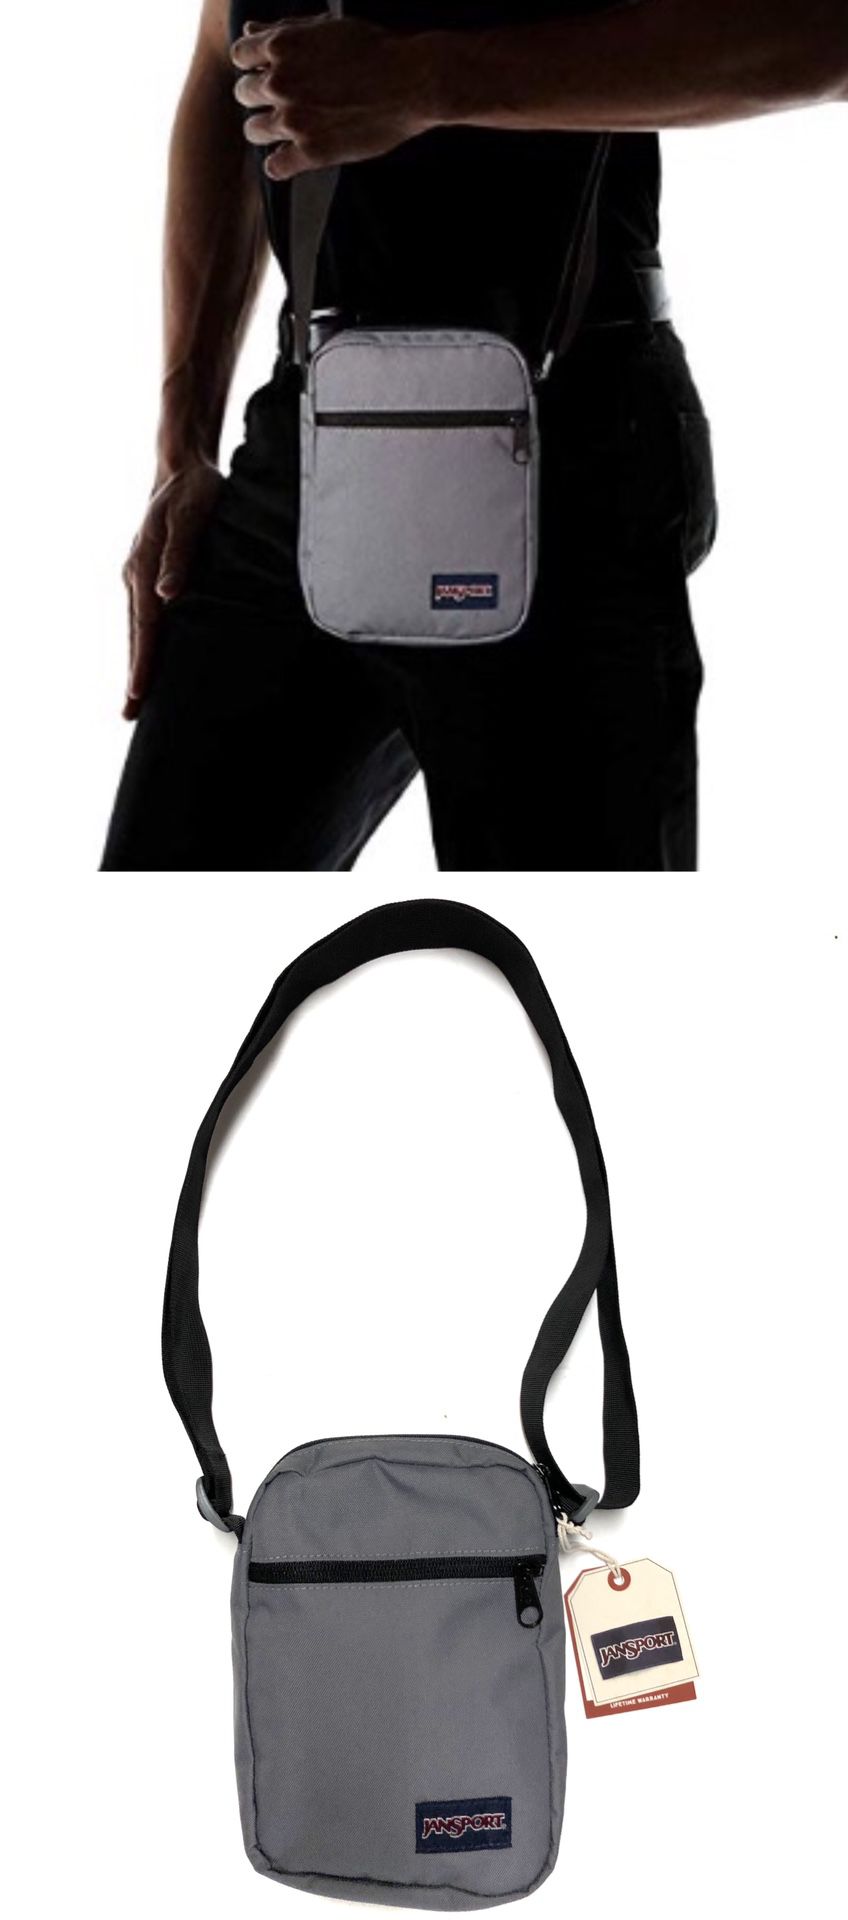 NEW! JANSPORT CrossBody Side Bag Backpack messenger satchel cell phone tablet holder wallet biking school bag work bag sling chest bag